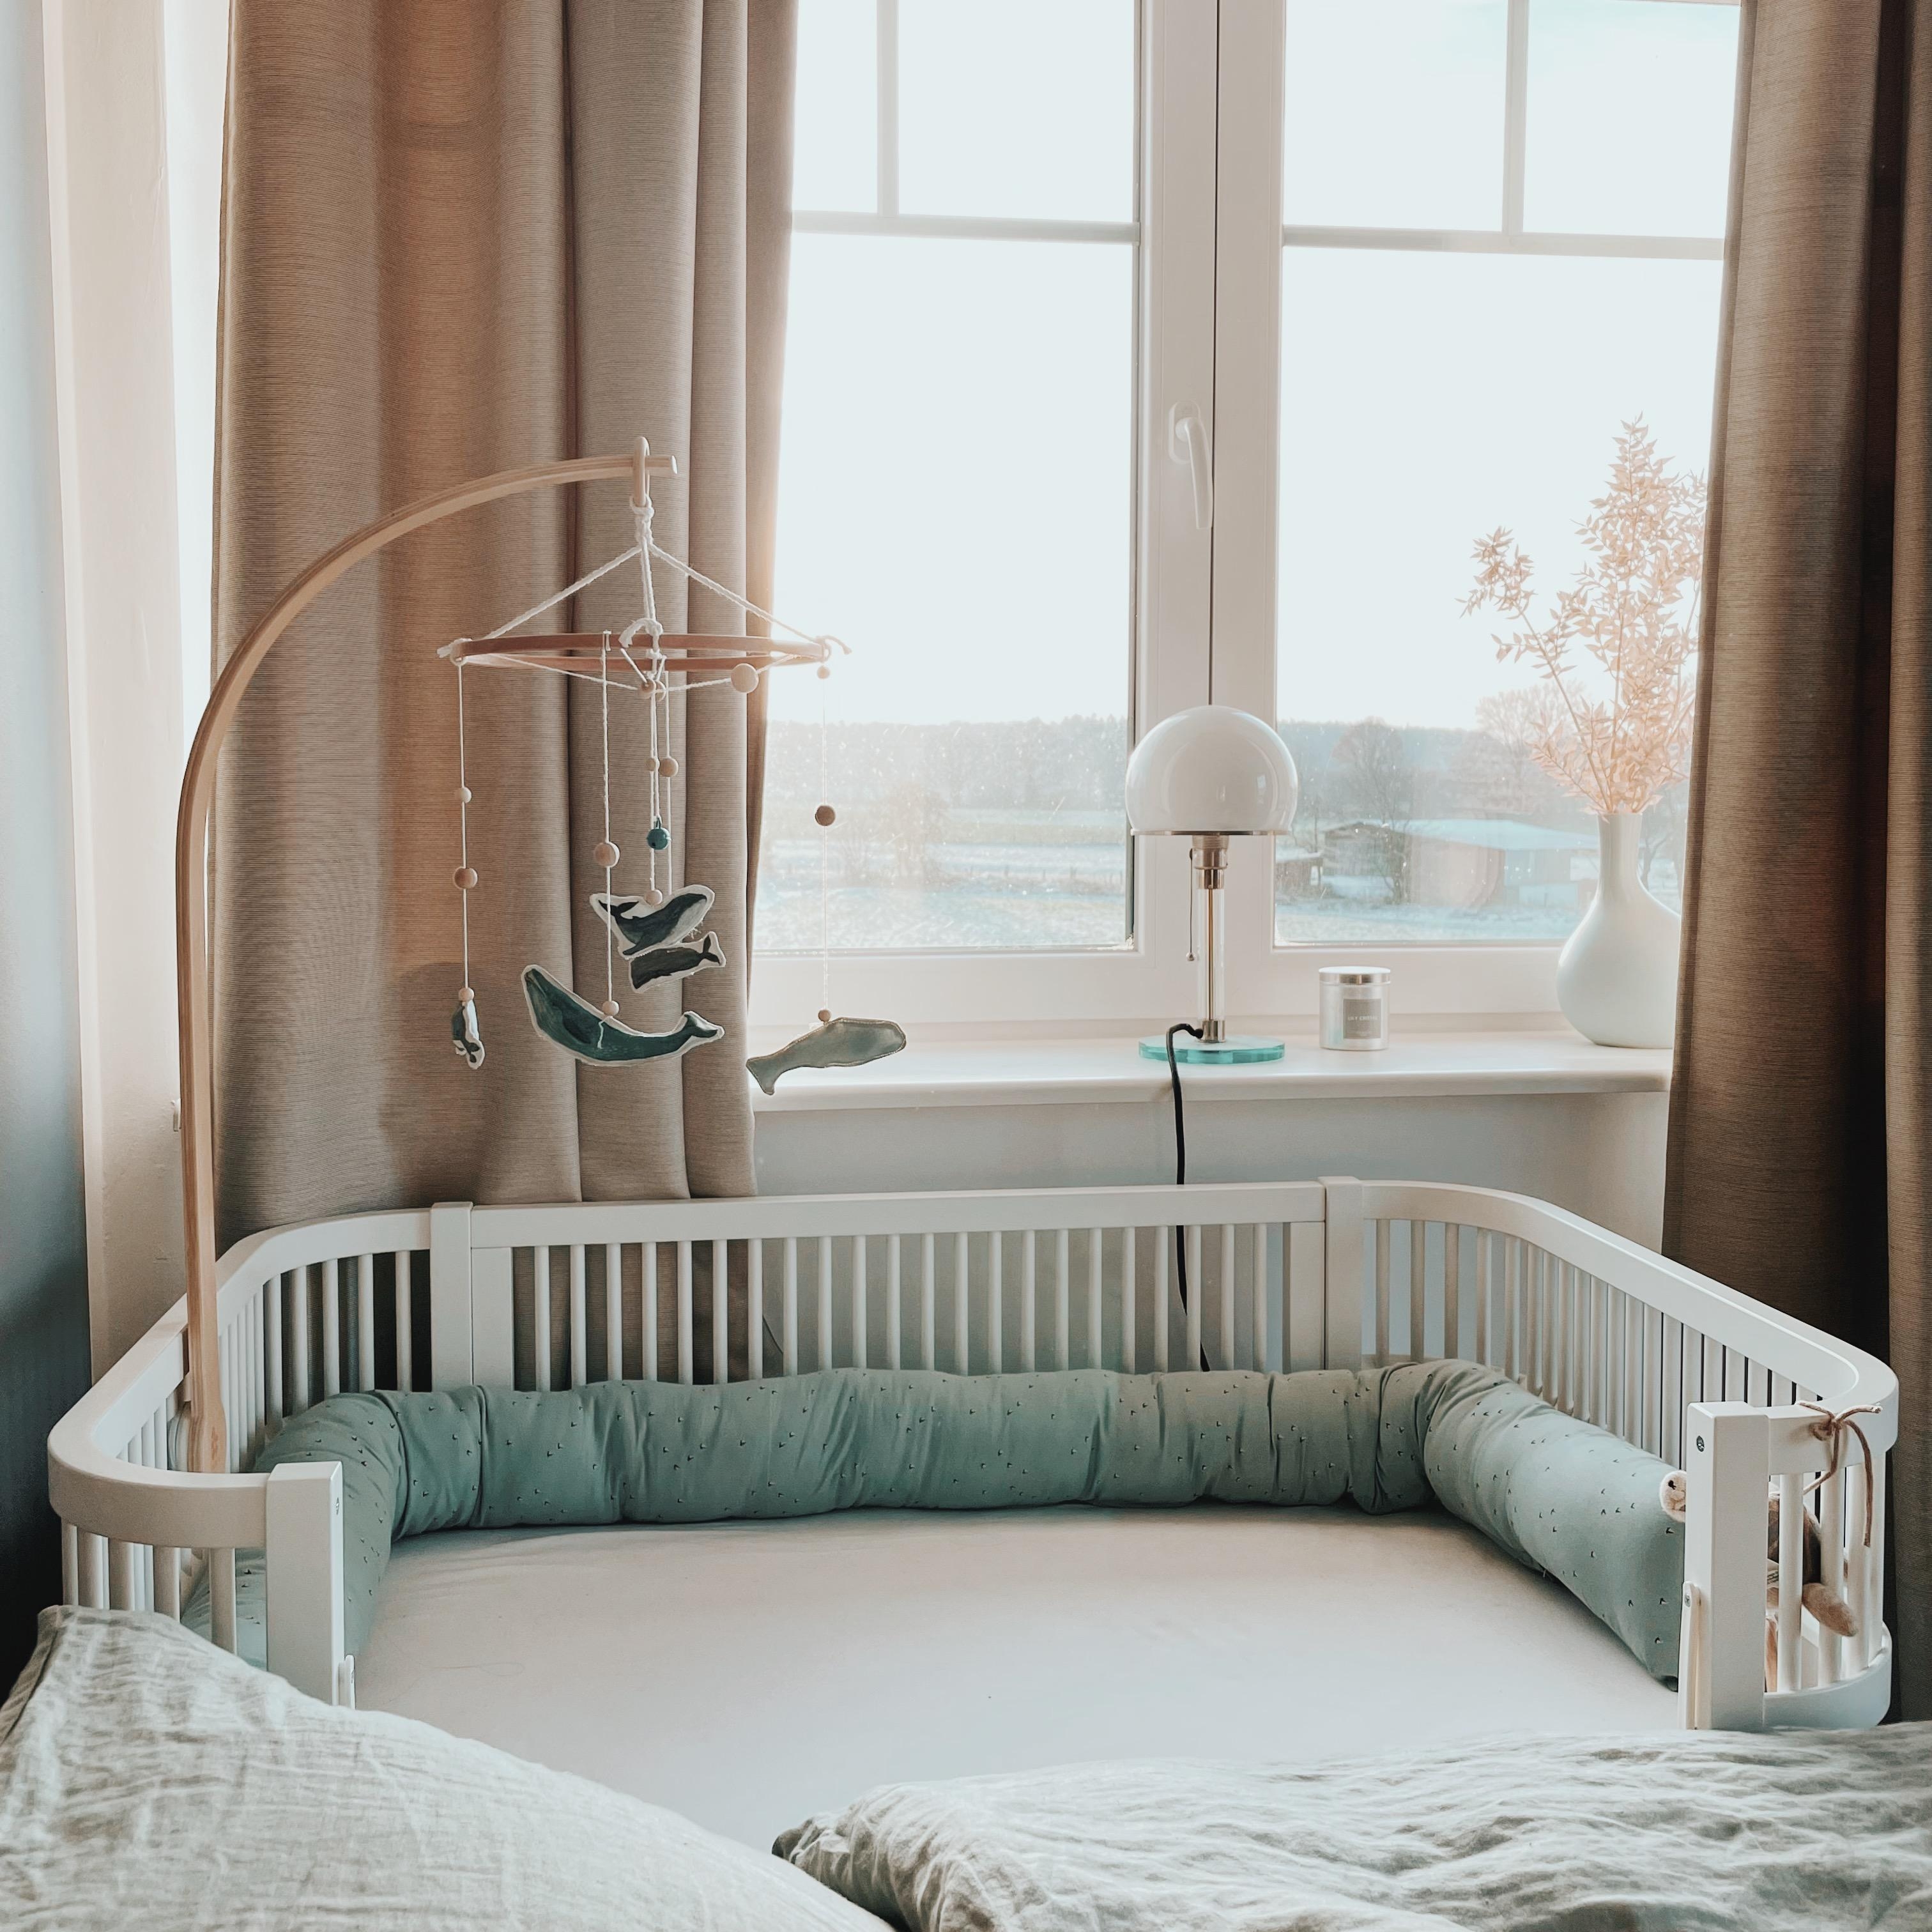 Ein großes Bett für den Kleinen 💙
#momlife #bedroom